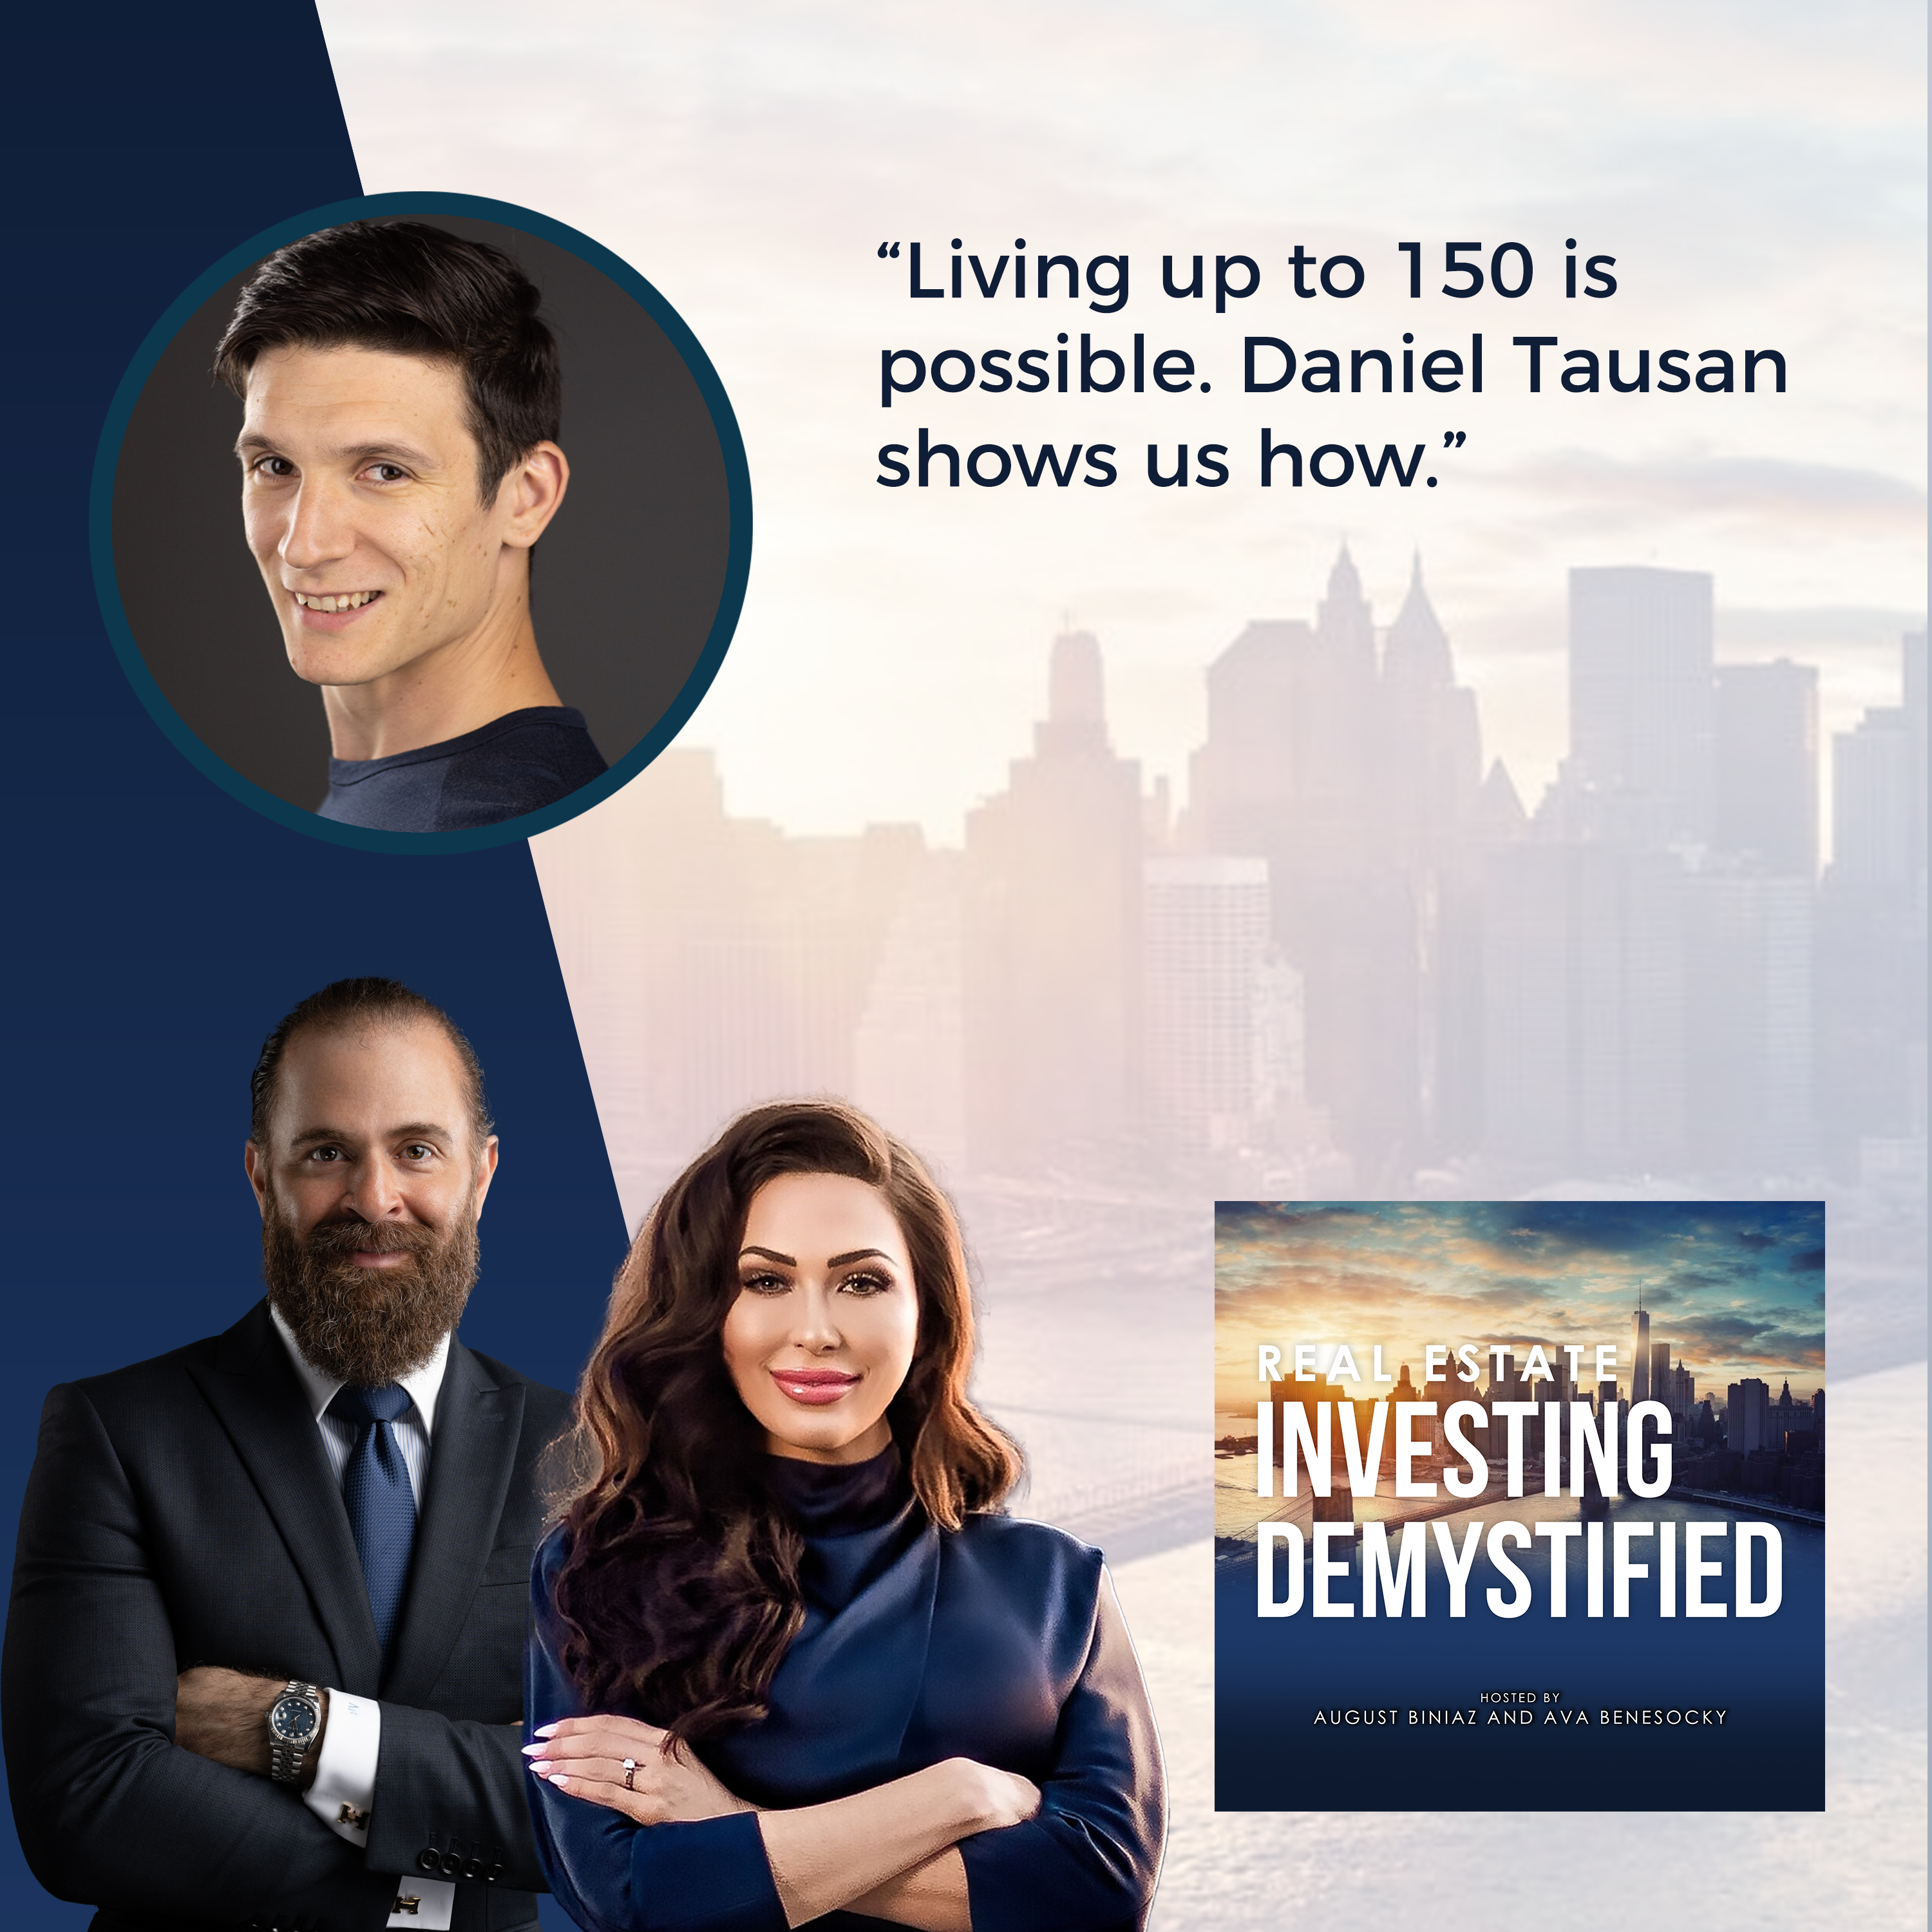 Real Estate Investing Demystified | Daniel Tausan | Longevity